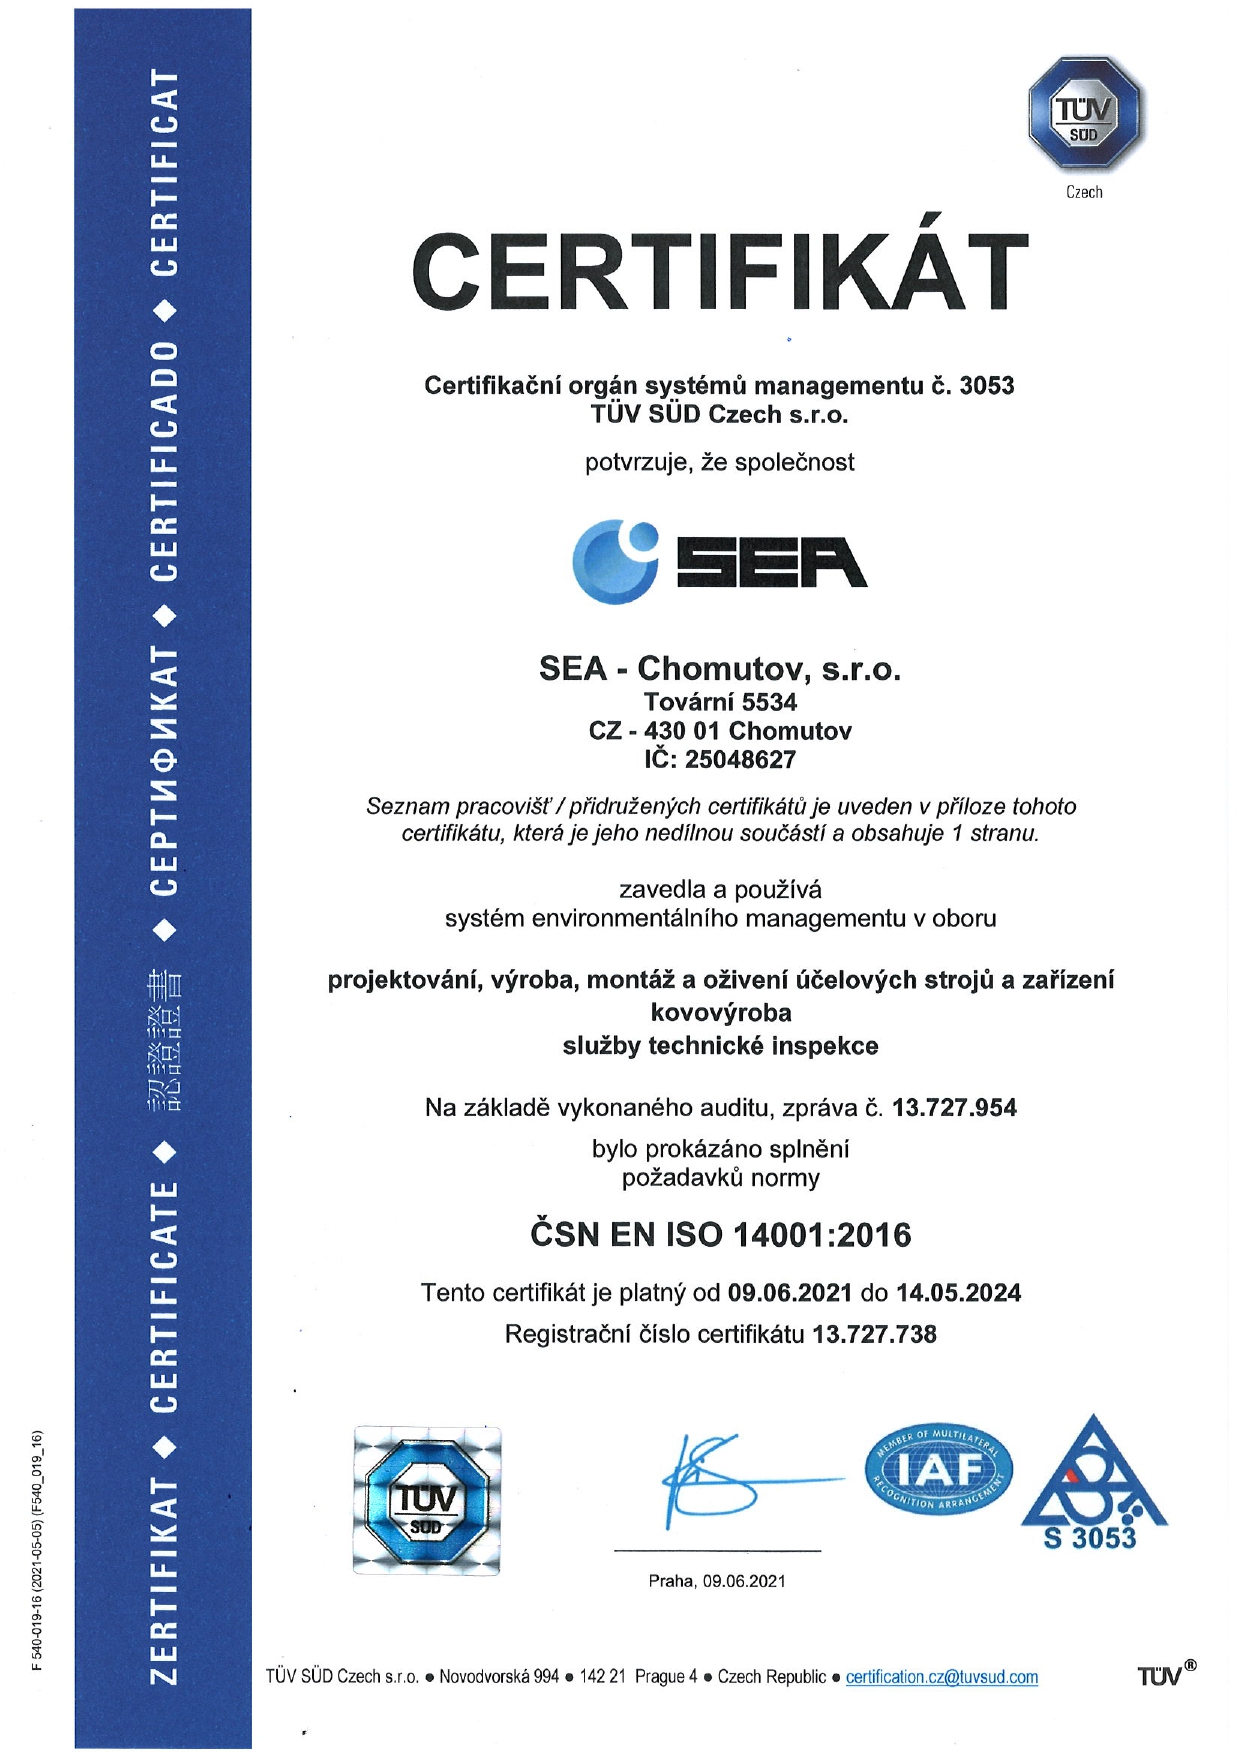 Certifikát systému environmentálního managementu podle ČSN EN ISO 14001:2016